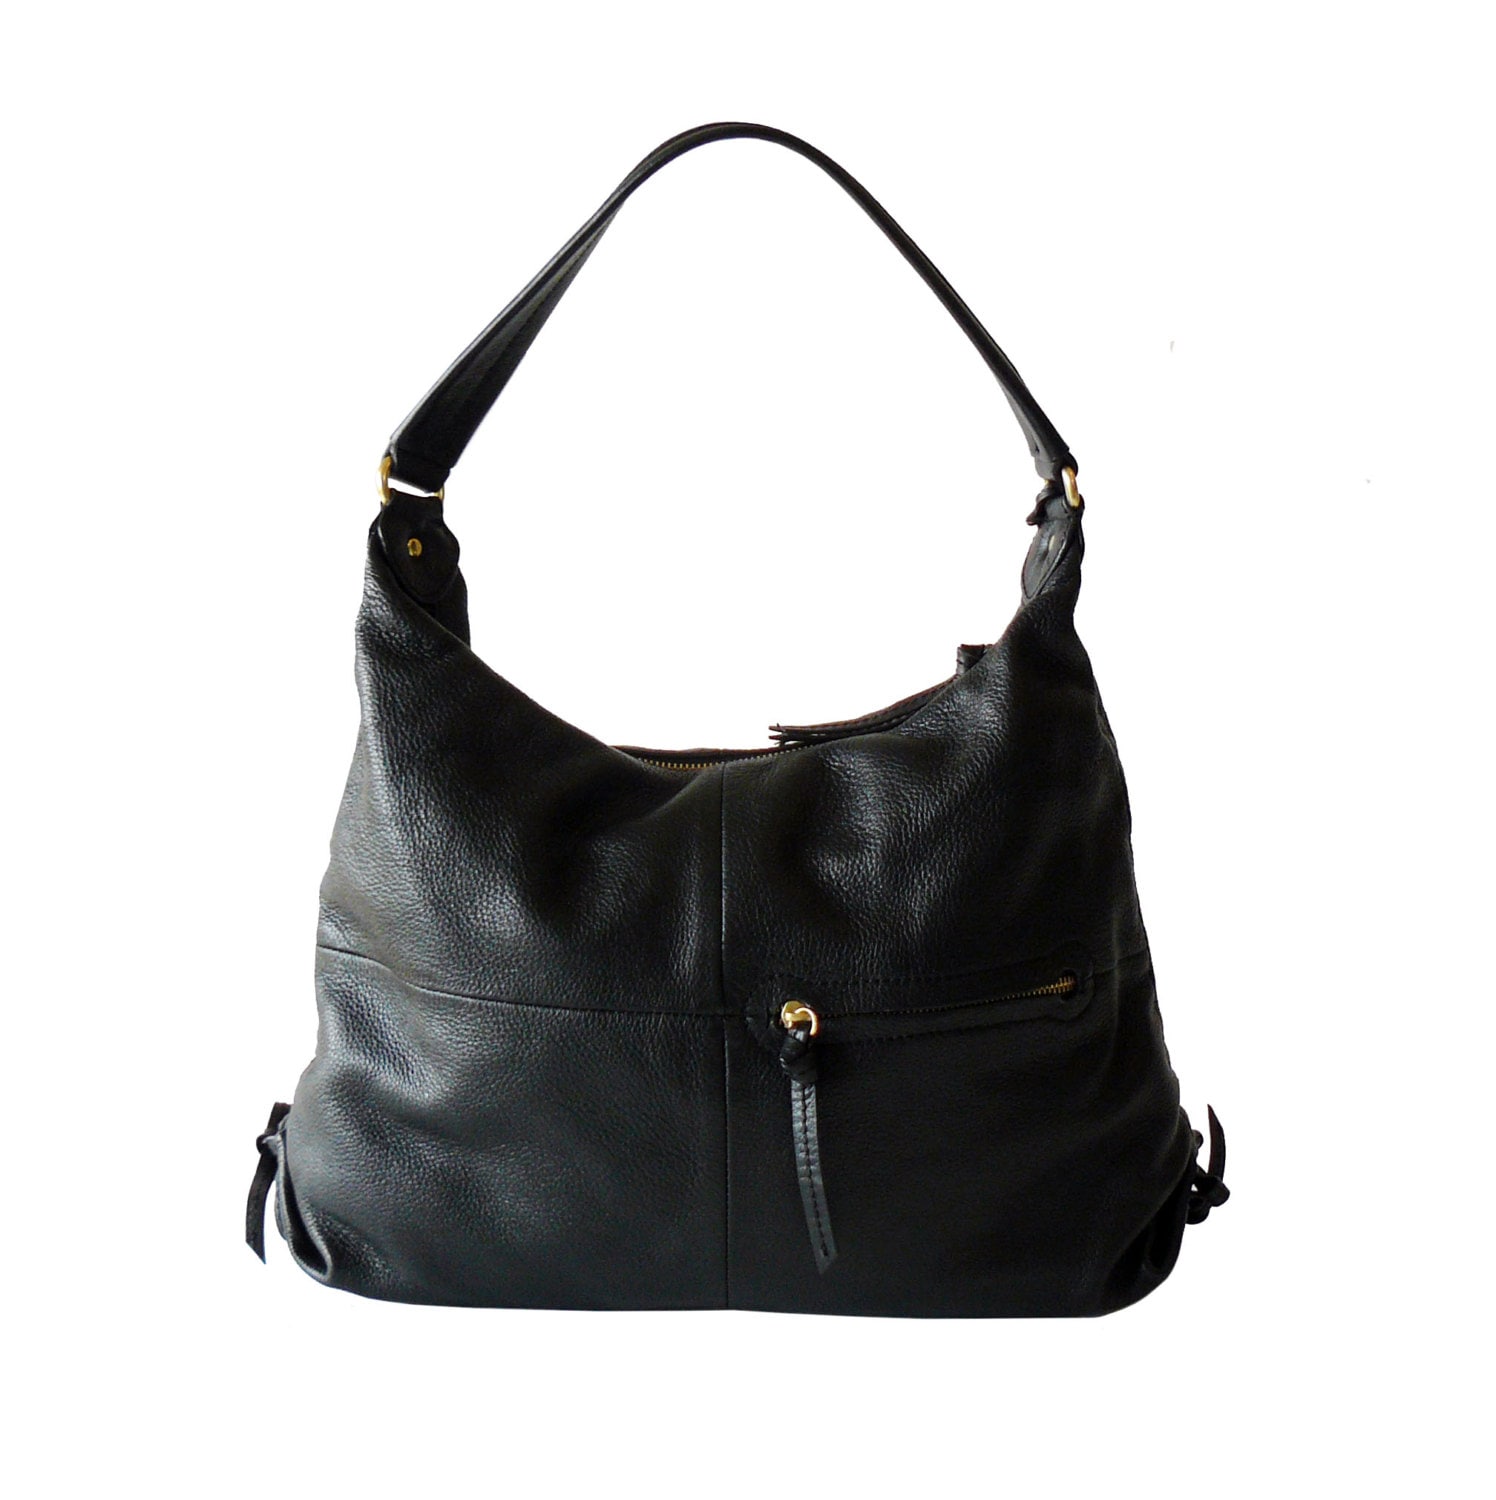 Reserved / Ellen Tracy Black Leather Hobo Shoulder Bag